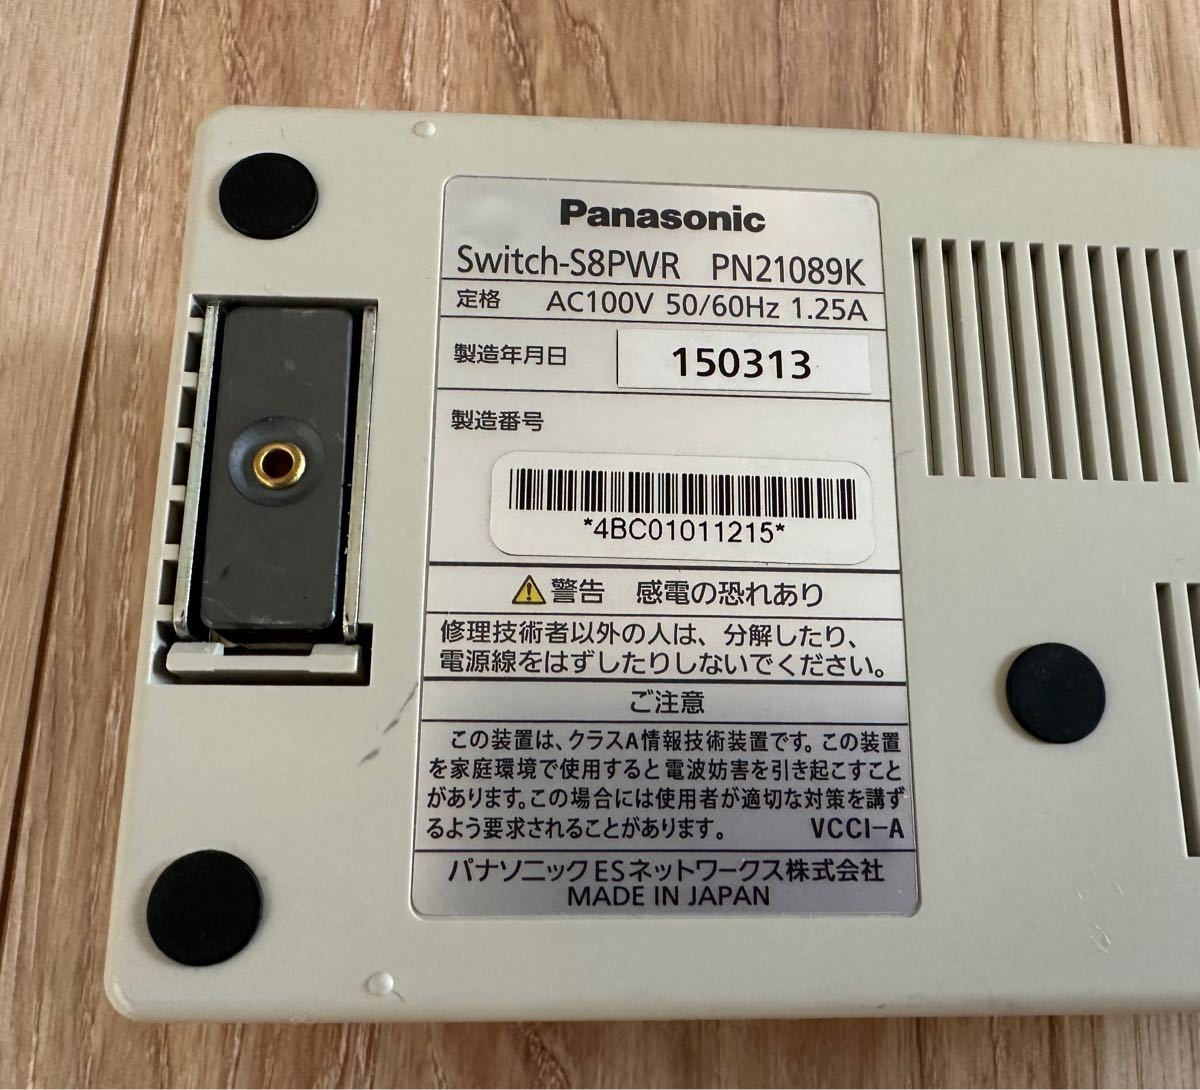 Panasonic (パナソニック) PoE対応 8ポートL2スイッチングハブ Switch